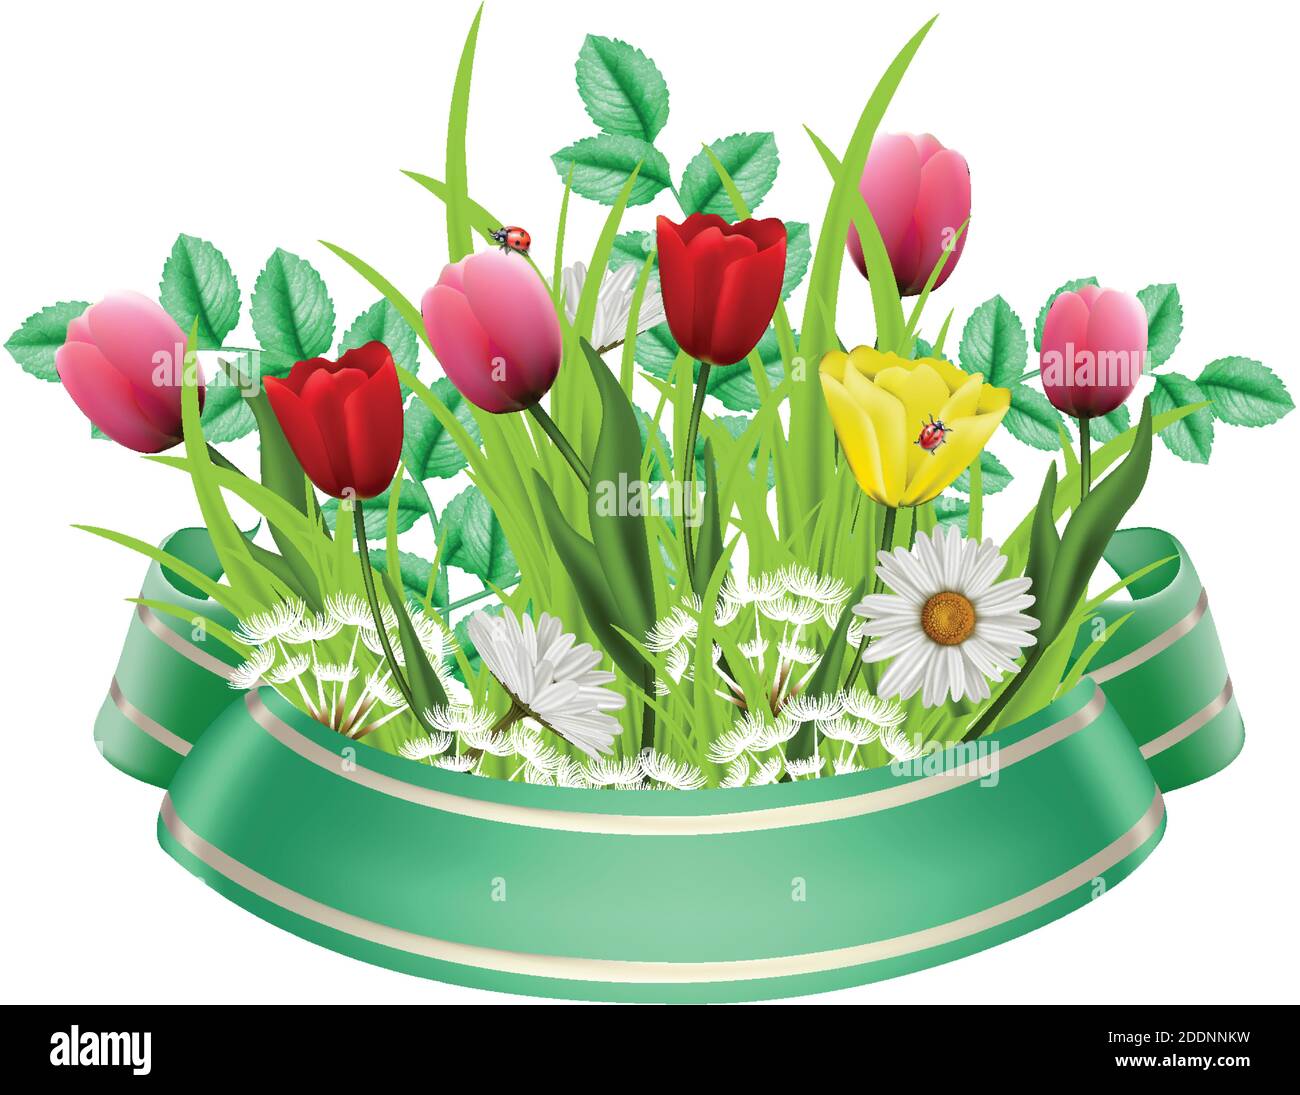 Vector 3d realistischer Frühlingsstrauß mit Blume, bunten Tulpen und Kamillen, mit grünem Band. Stock Vektor